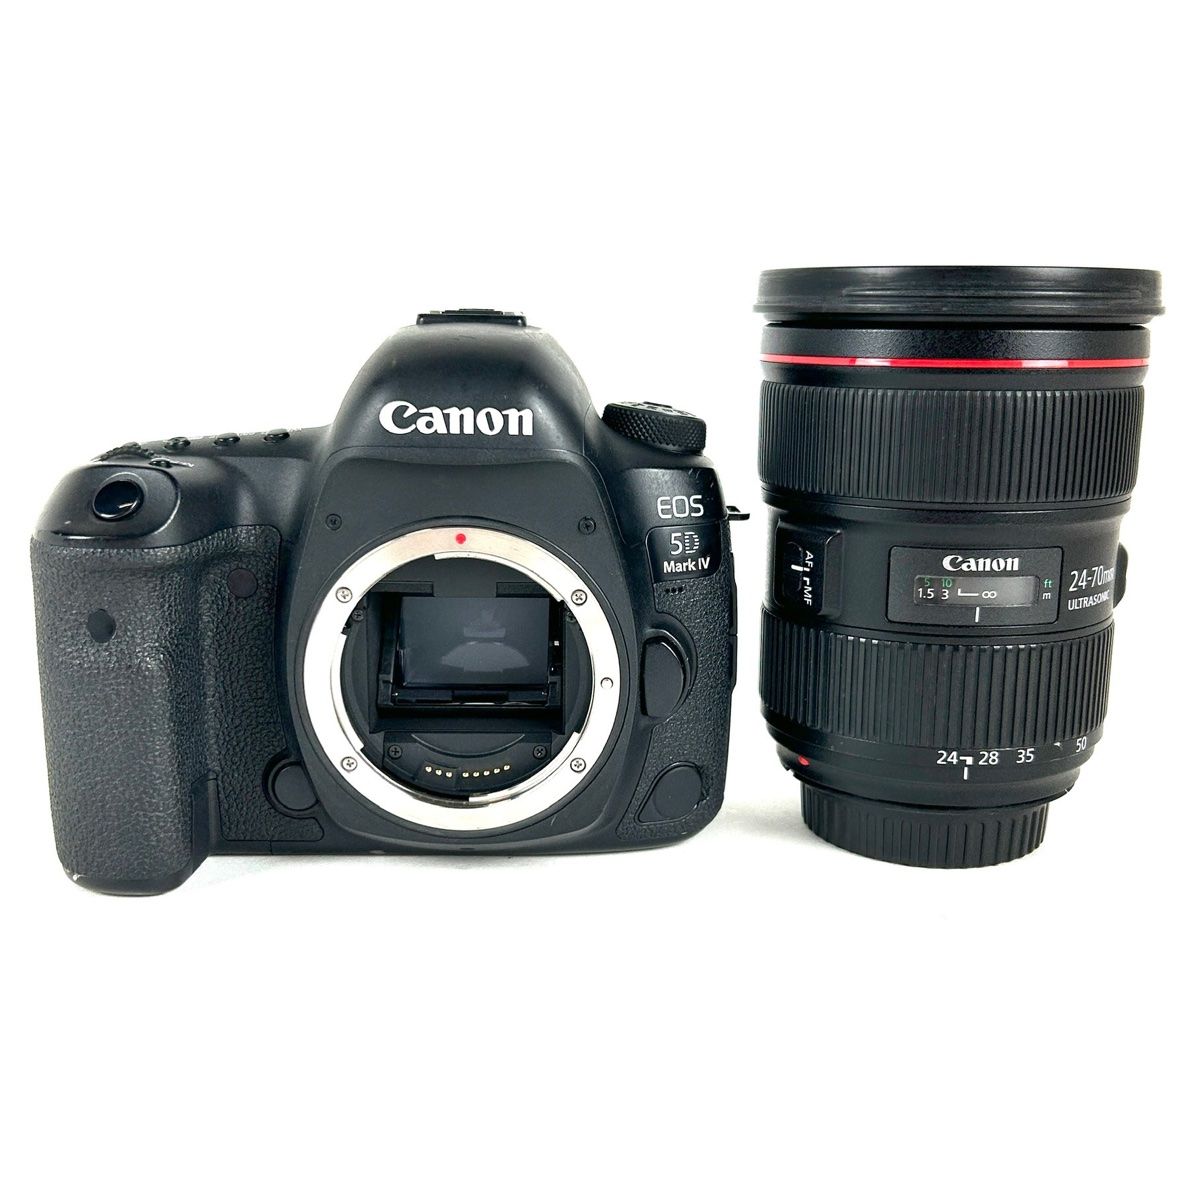 キヤノン Canon EOS 5D Mark IV EF 24-70L II USM レンズキット